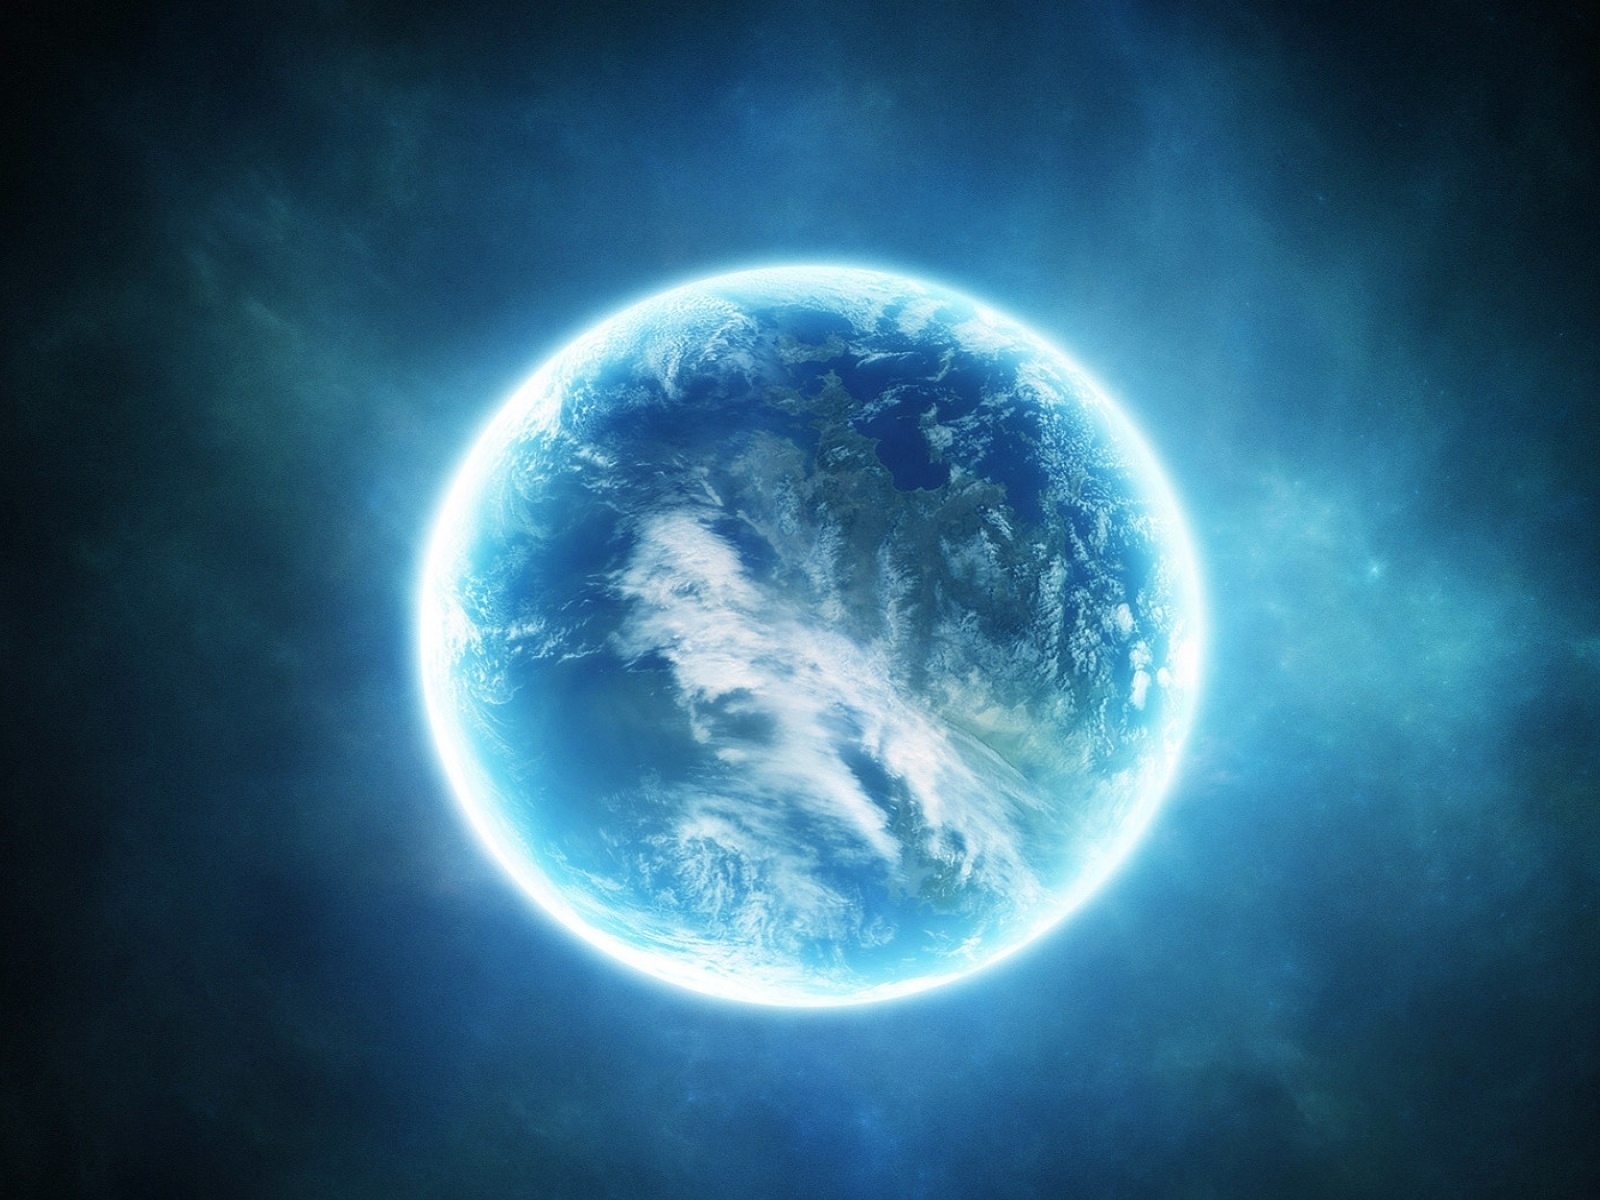 science fiction, Planet, light, blue